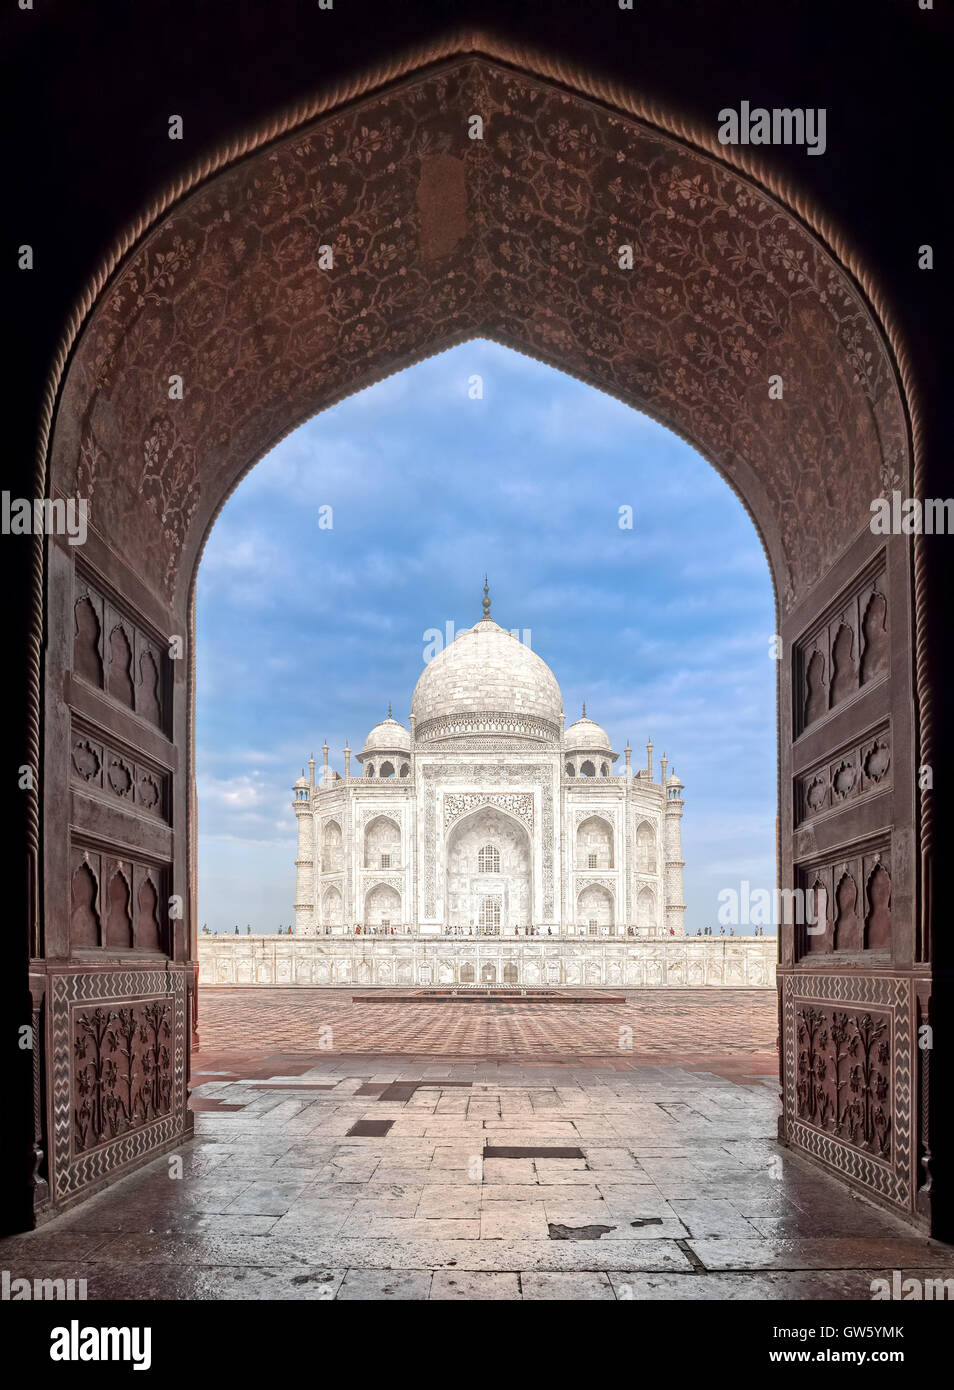 Ansicht des Taj Mahal Masoleum durch ein Tor Bogen, Agra, Indien Stockfoto